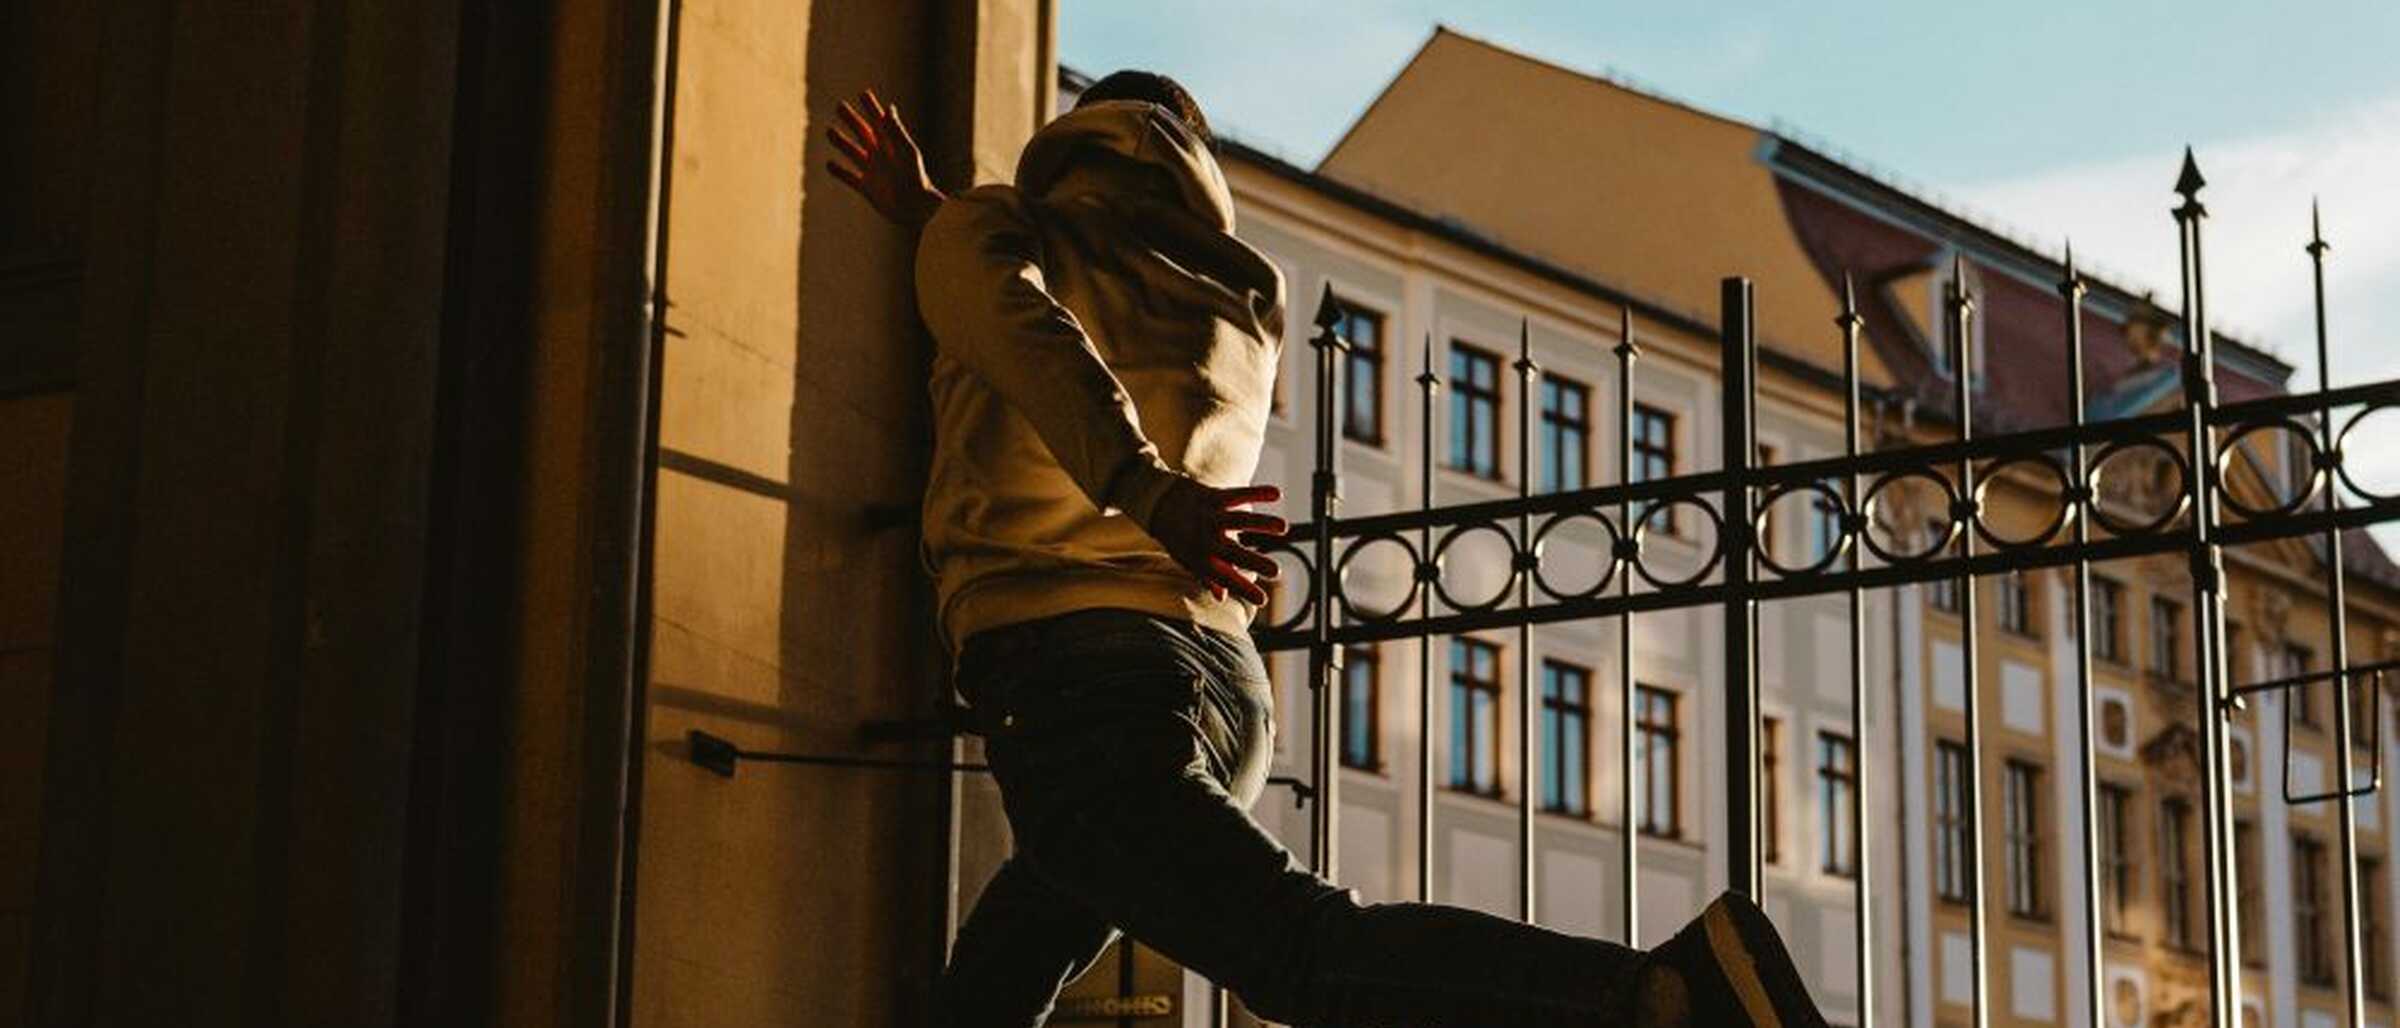 Ein junger Mann springt im Rathaus-Eingan in Zittau in die Höhe und wird in diesem Moment fotografiert